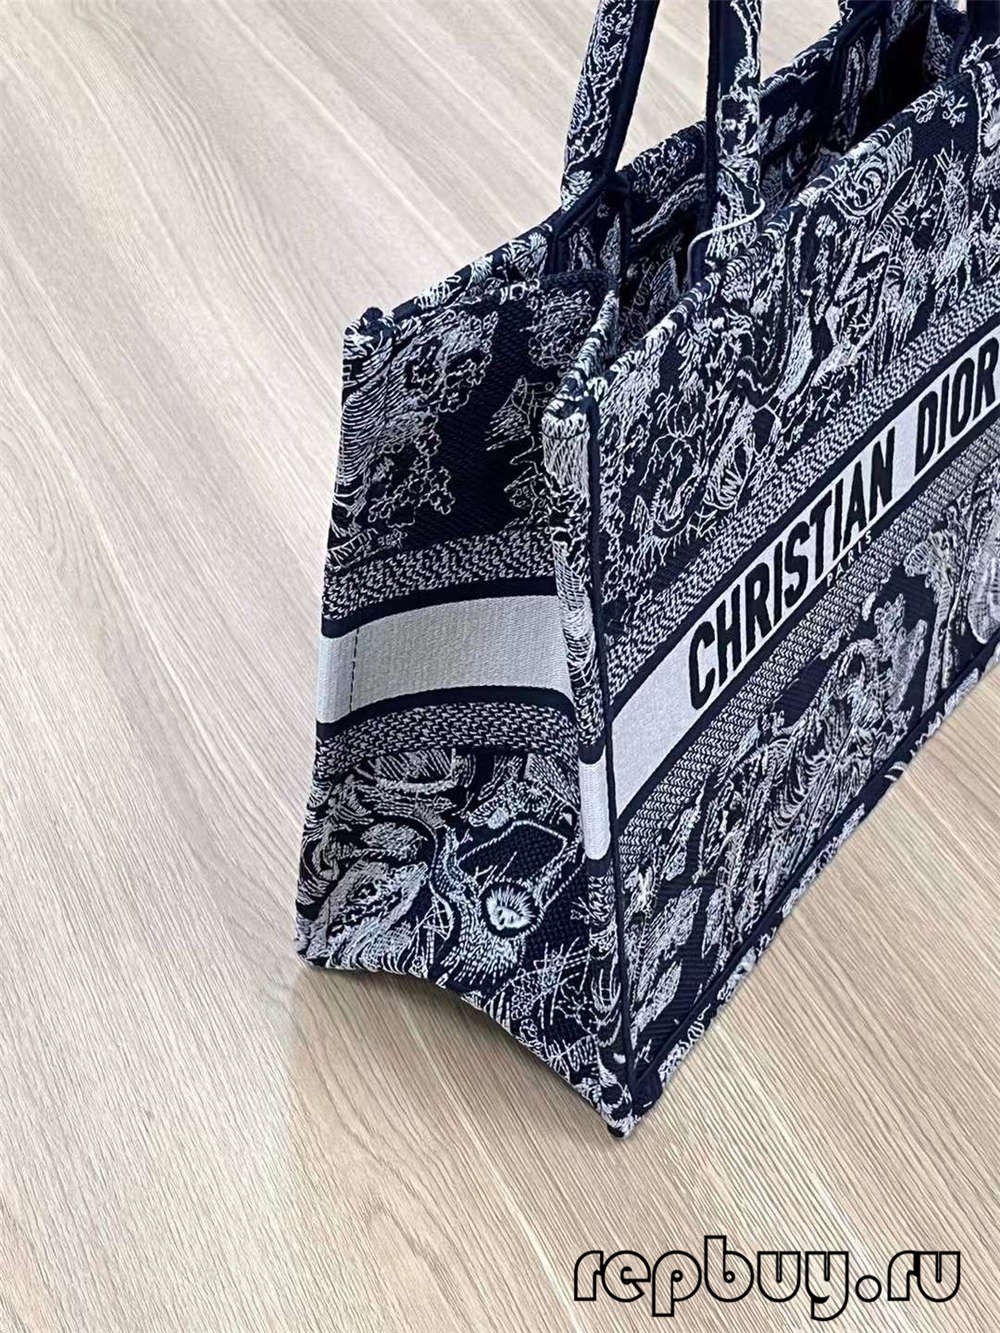 Dior Book Tote Small top replica bags 36cm (2022 Edition )-Best Quality Fake designer Bag Review, Replica designer bag ru